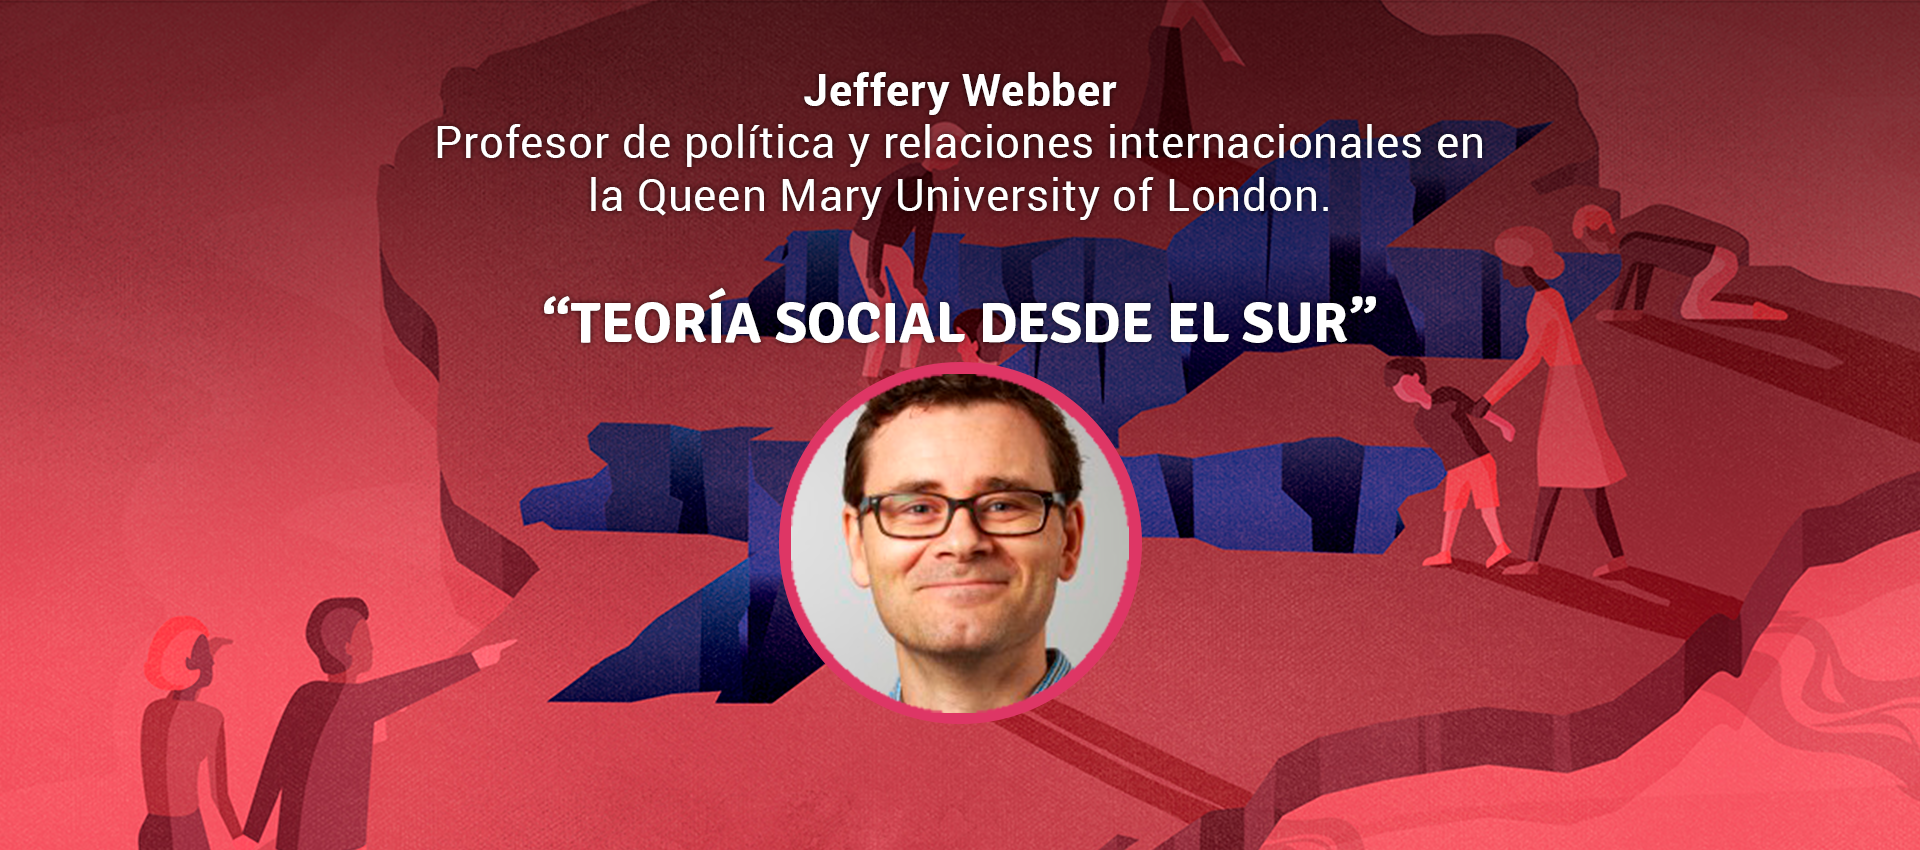 Jeffrey Webber -TEORÍA SOCIAL DESDE EL SUR